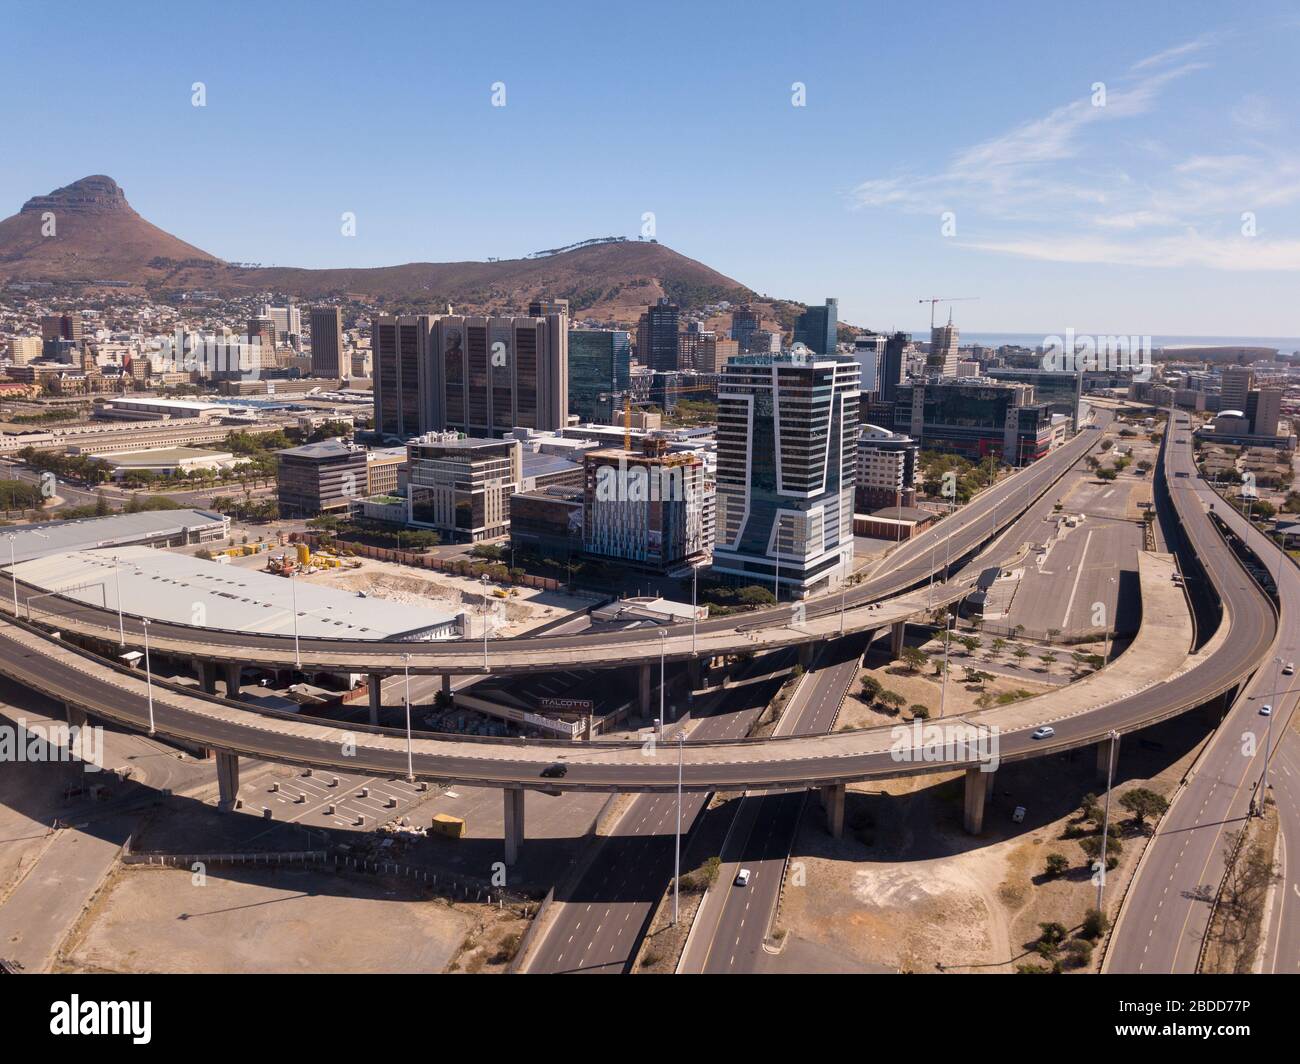 April 2020 - Kapstadt, Südafrika: Luftbild über Kapstadt während der Covid-19-Sperre mit leeren Straßen Stockfoto